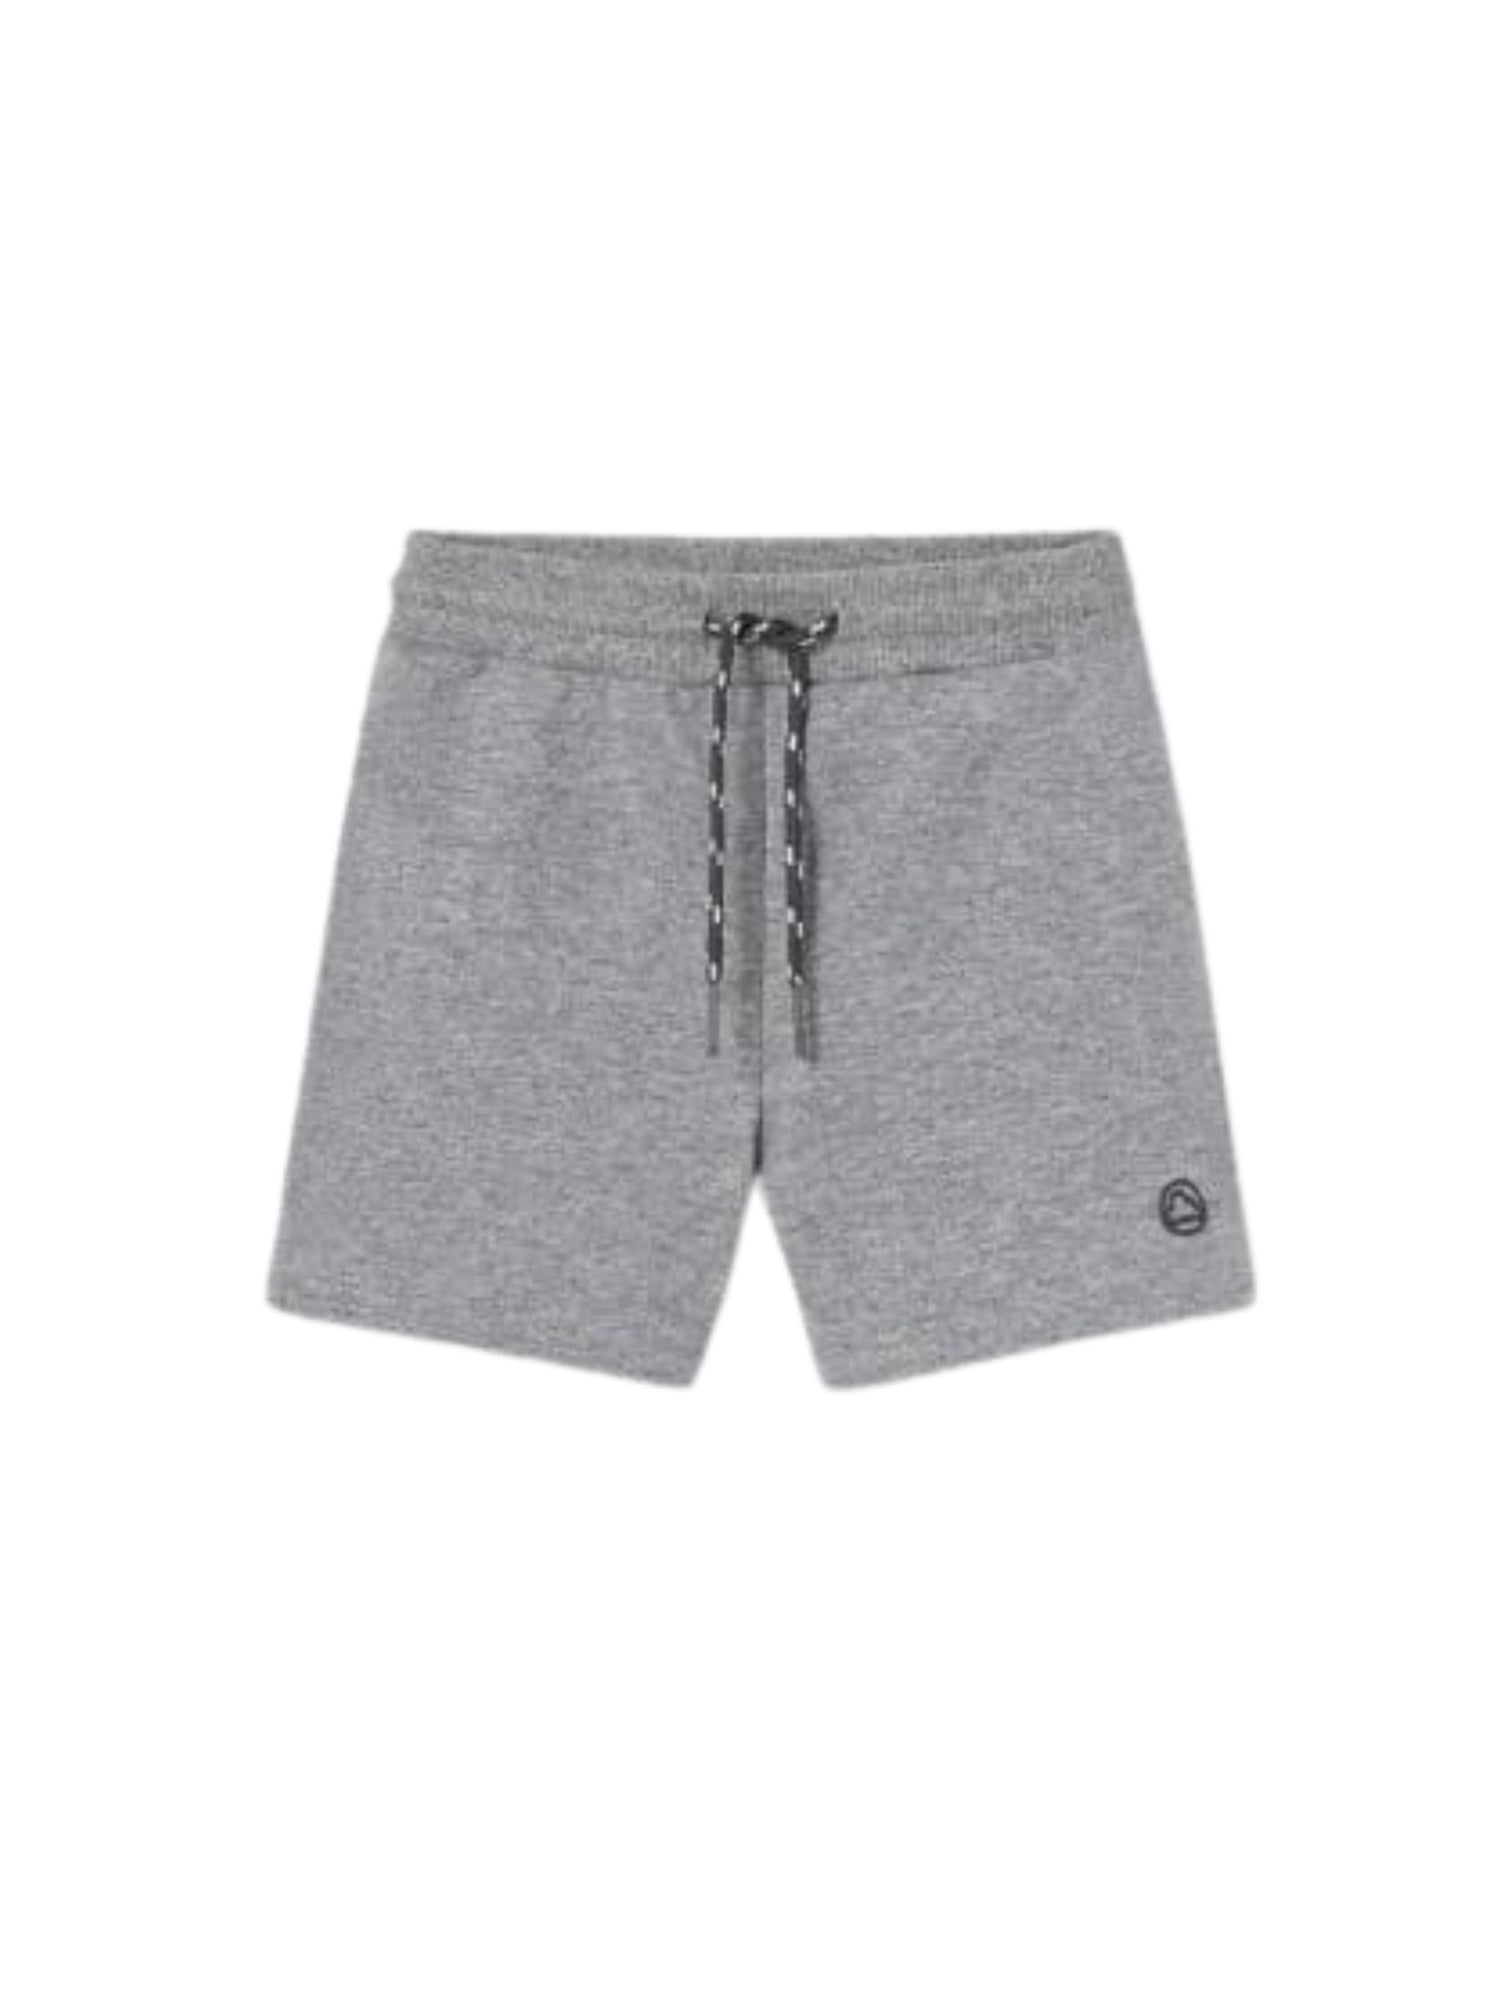 grey drawstring baby shorts